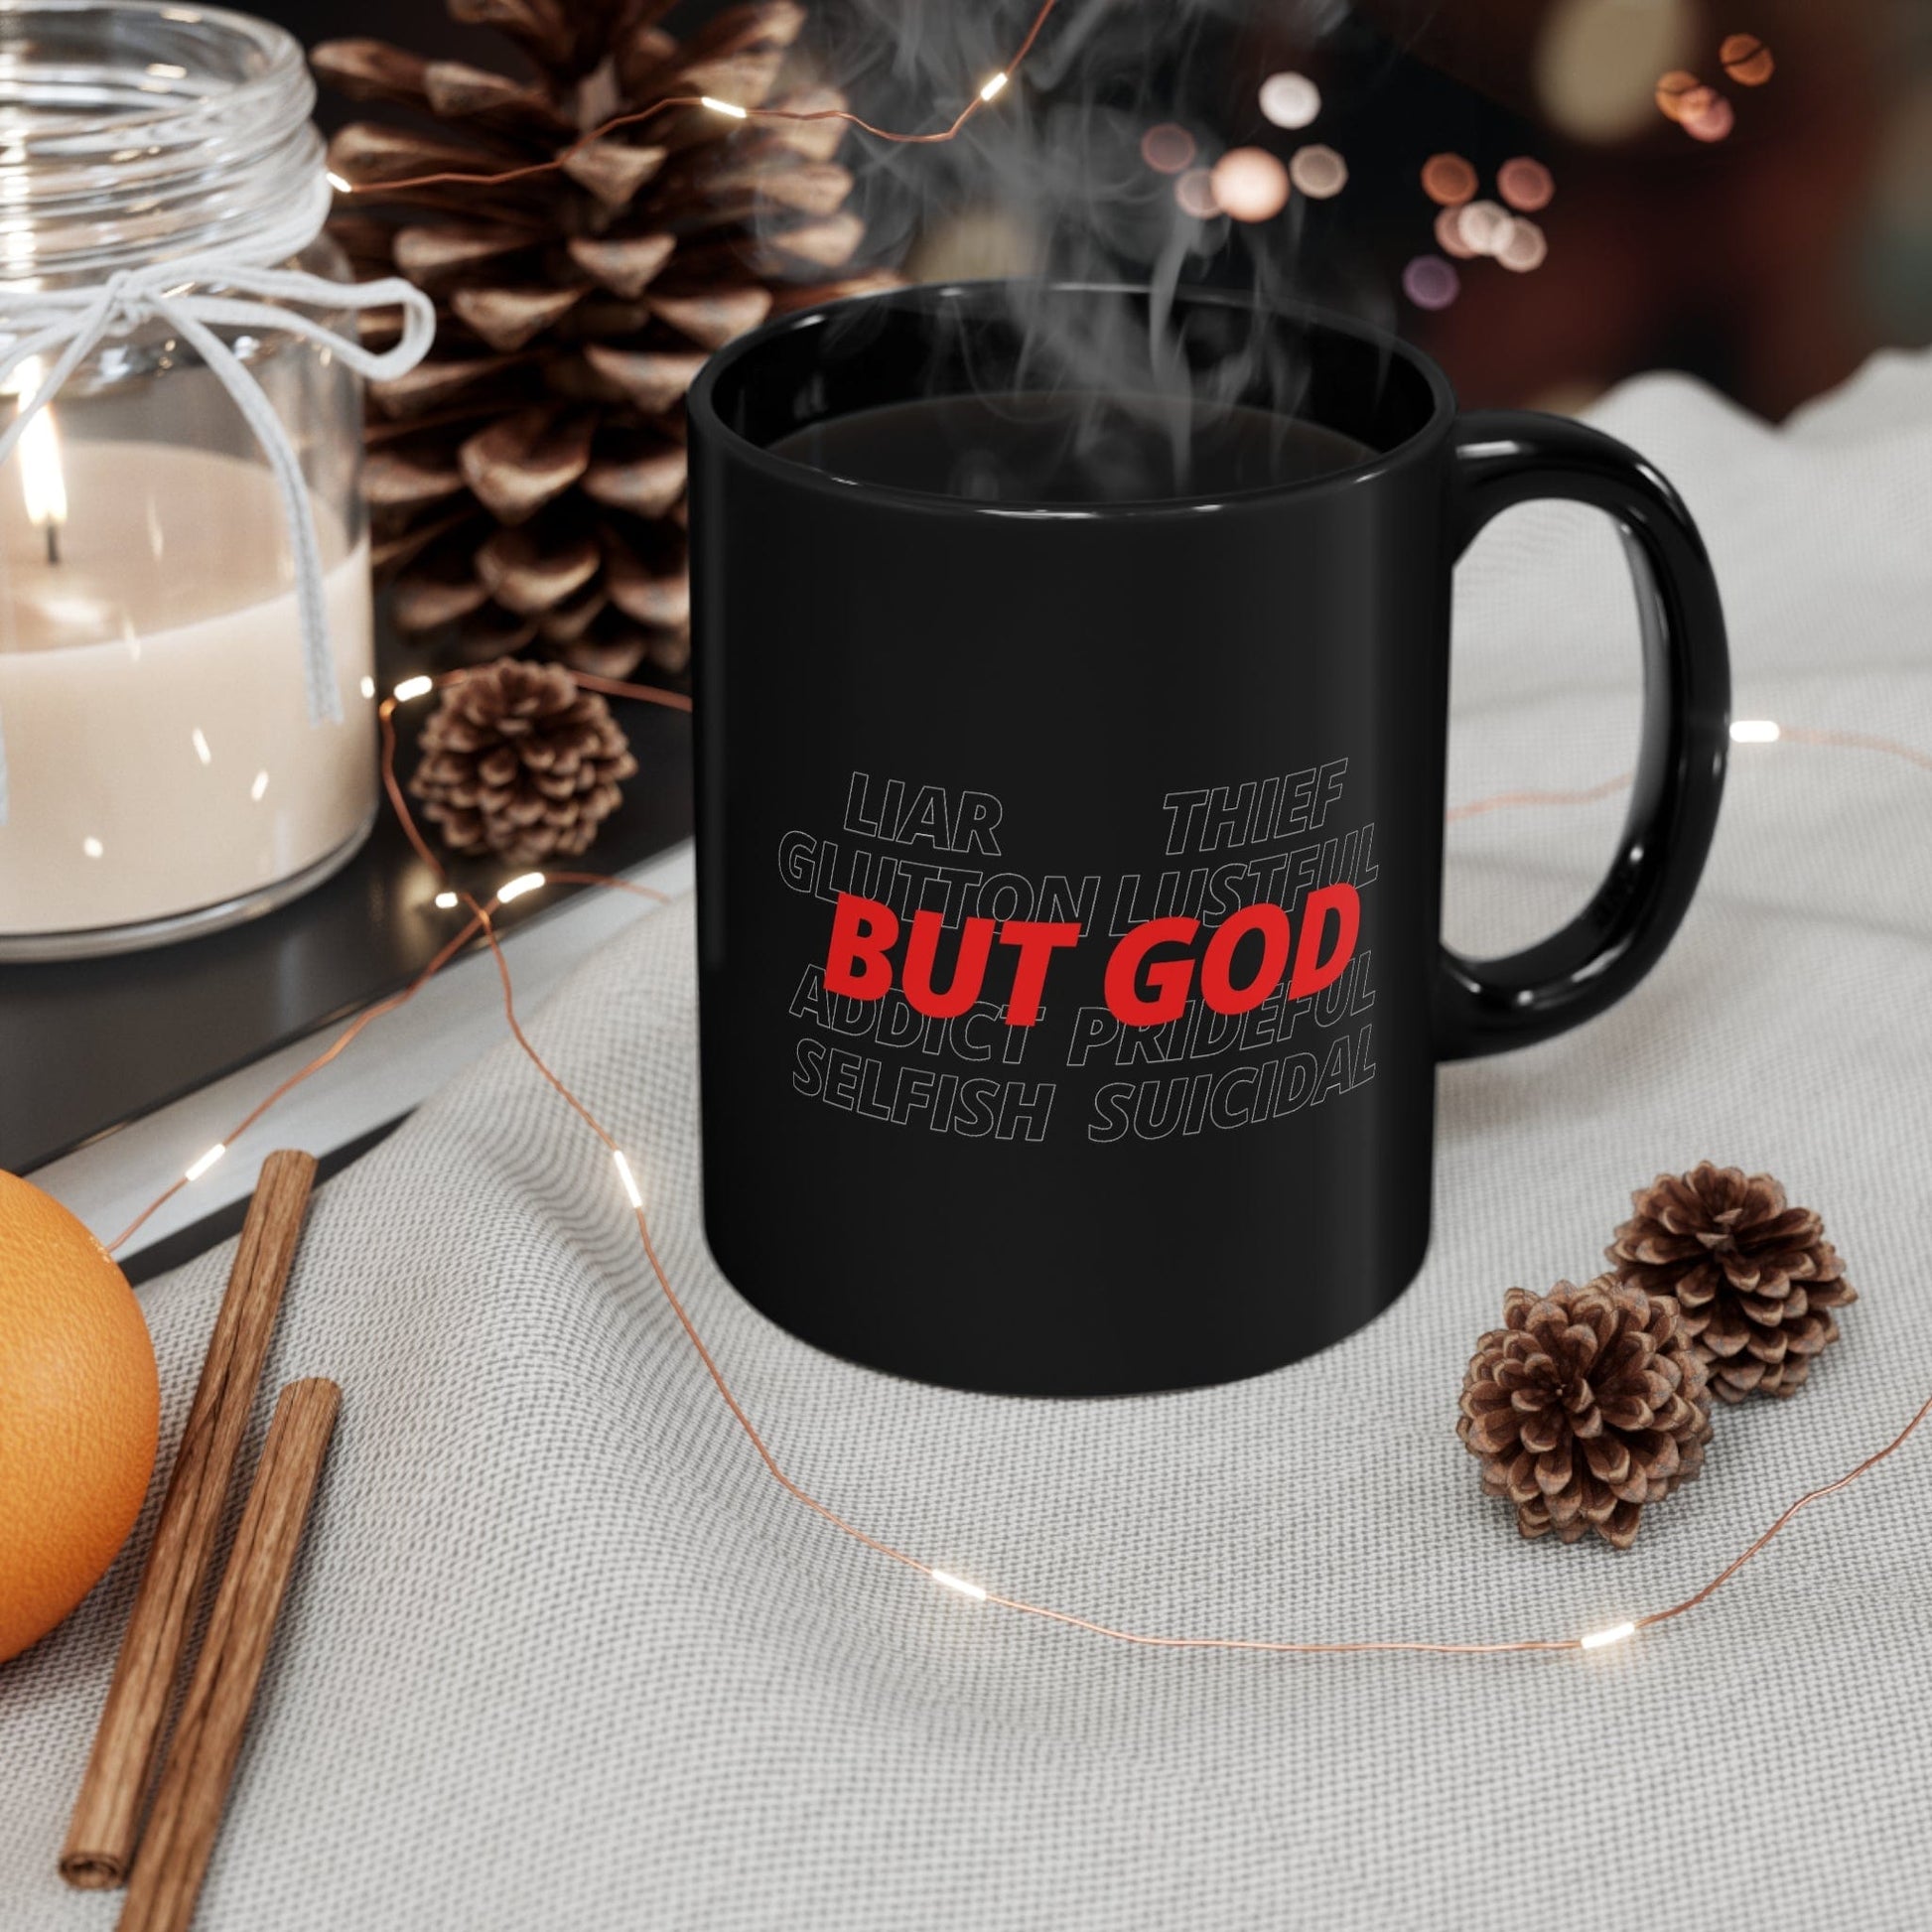 Printify Mug But God Christian Mug